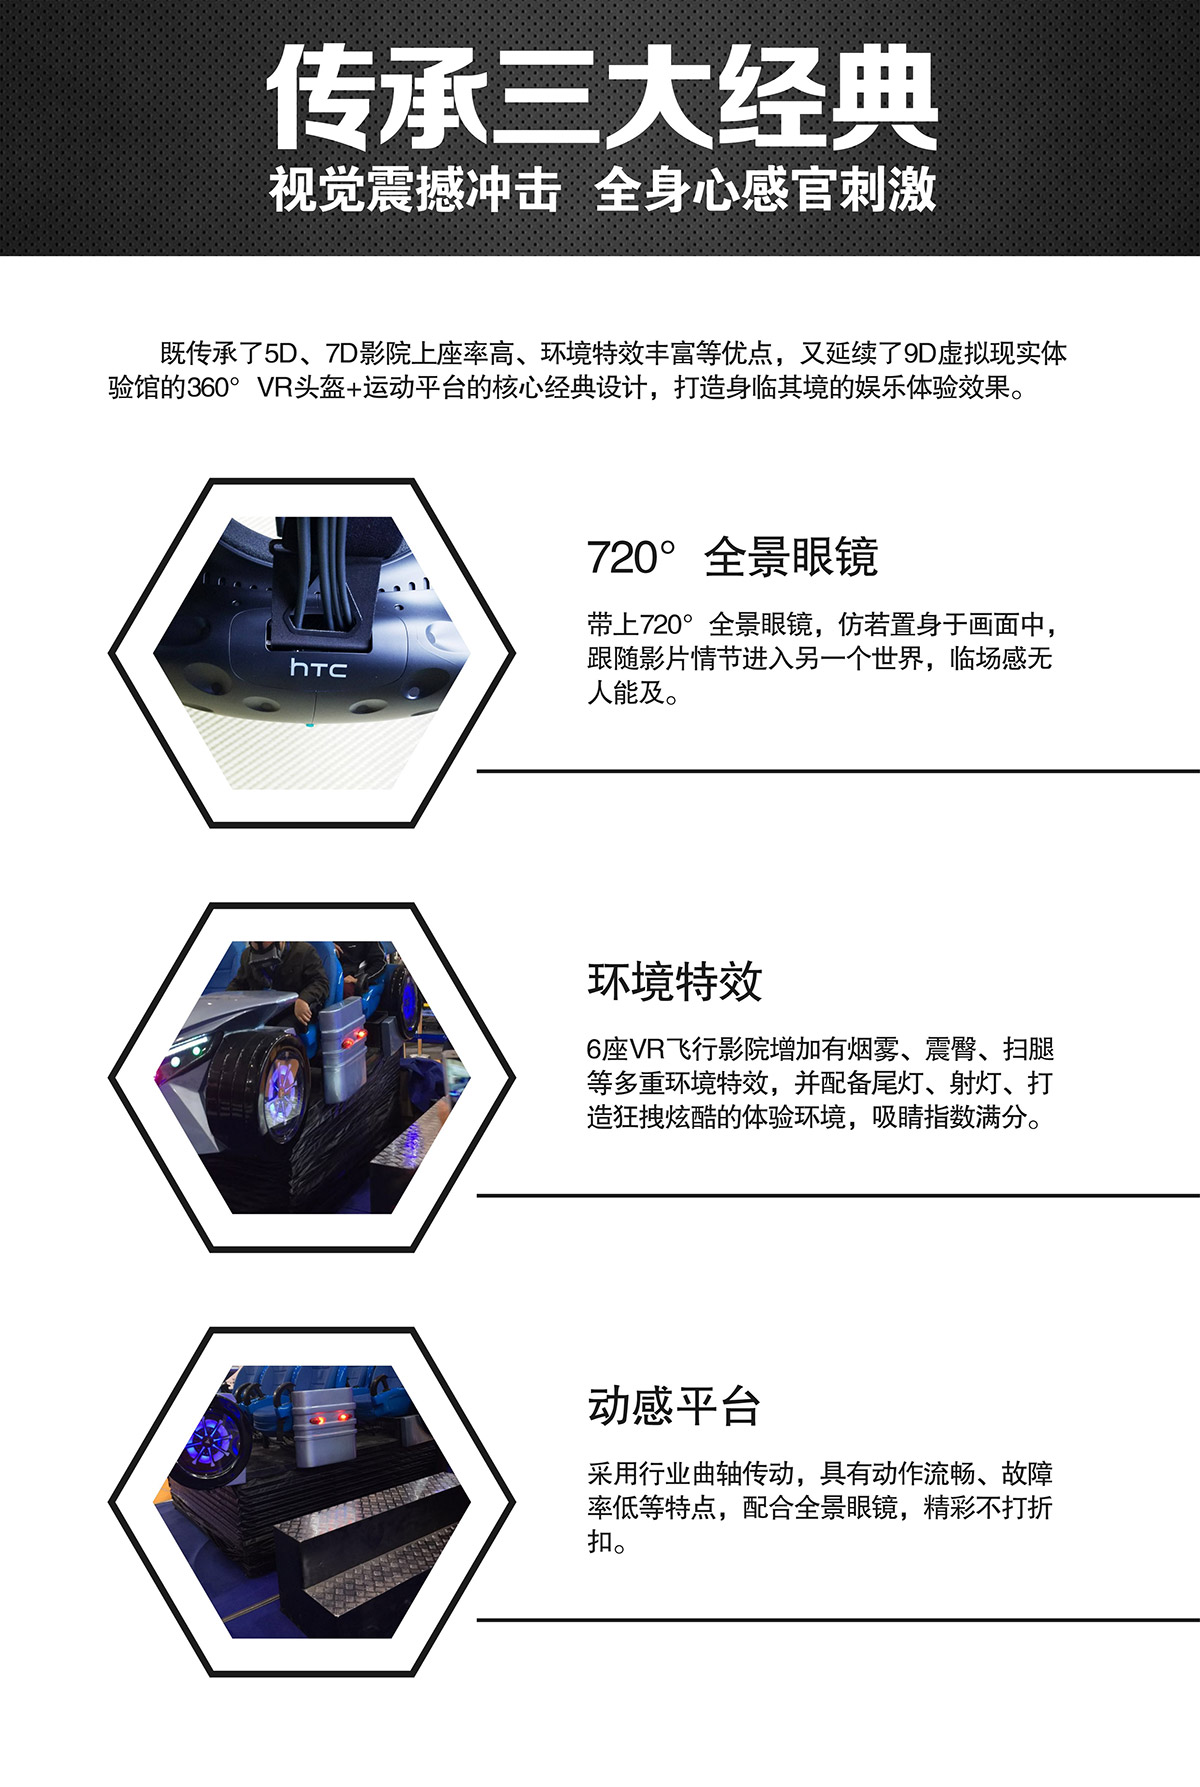 动感影院VR虚拟飞行体验馆视觉震撼冲击.jpg